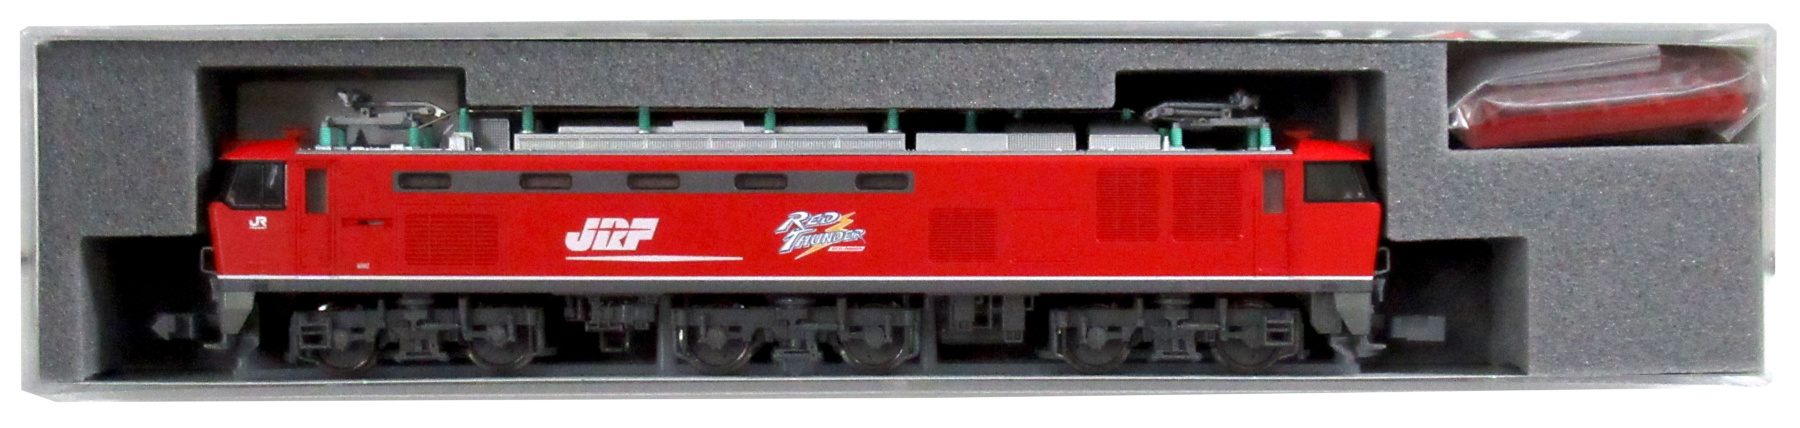 公式]鉄道模型(JR・国鉄 形式別(N)、電気機関車、EF510)カテゴリ 